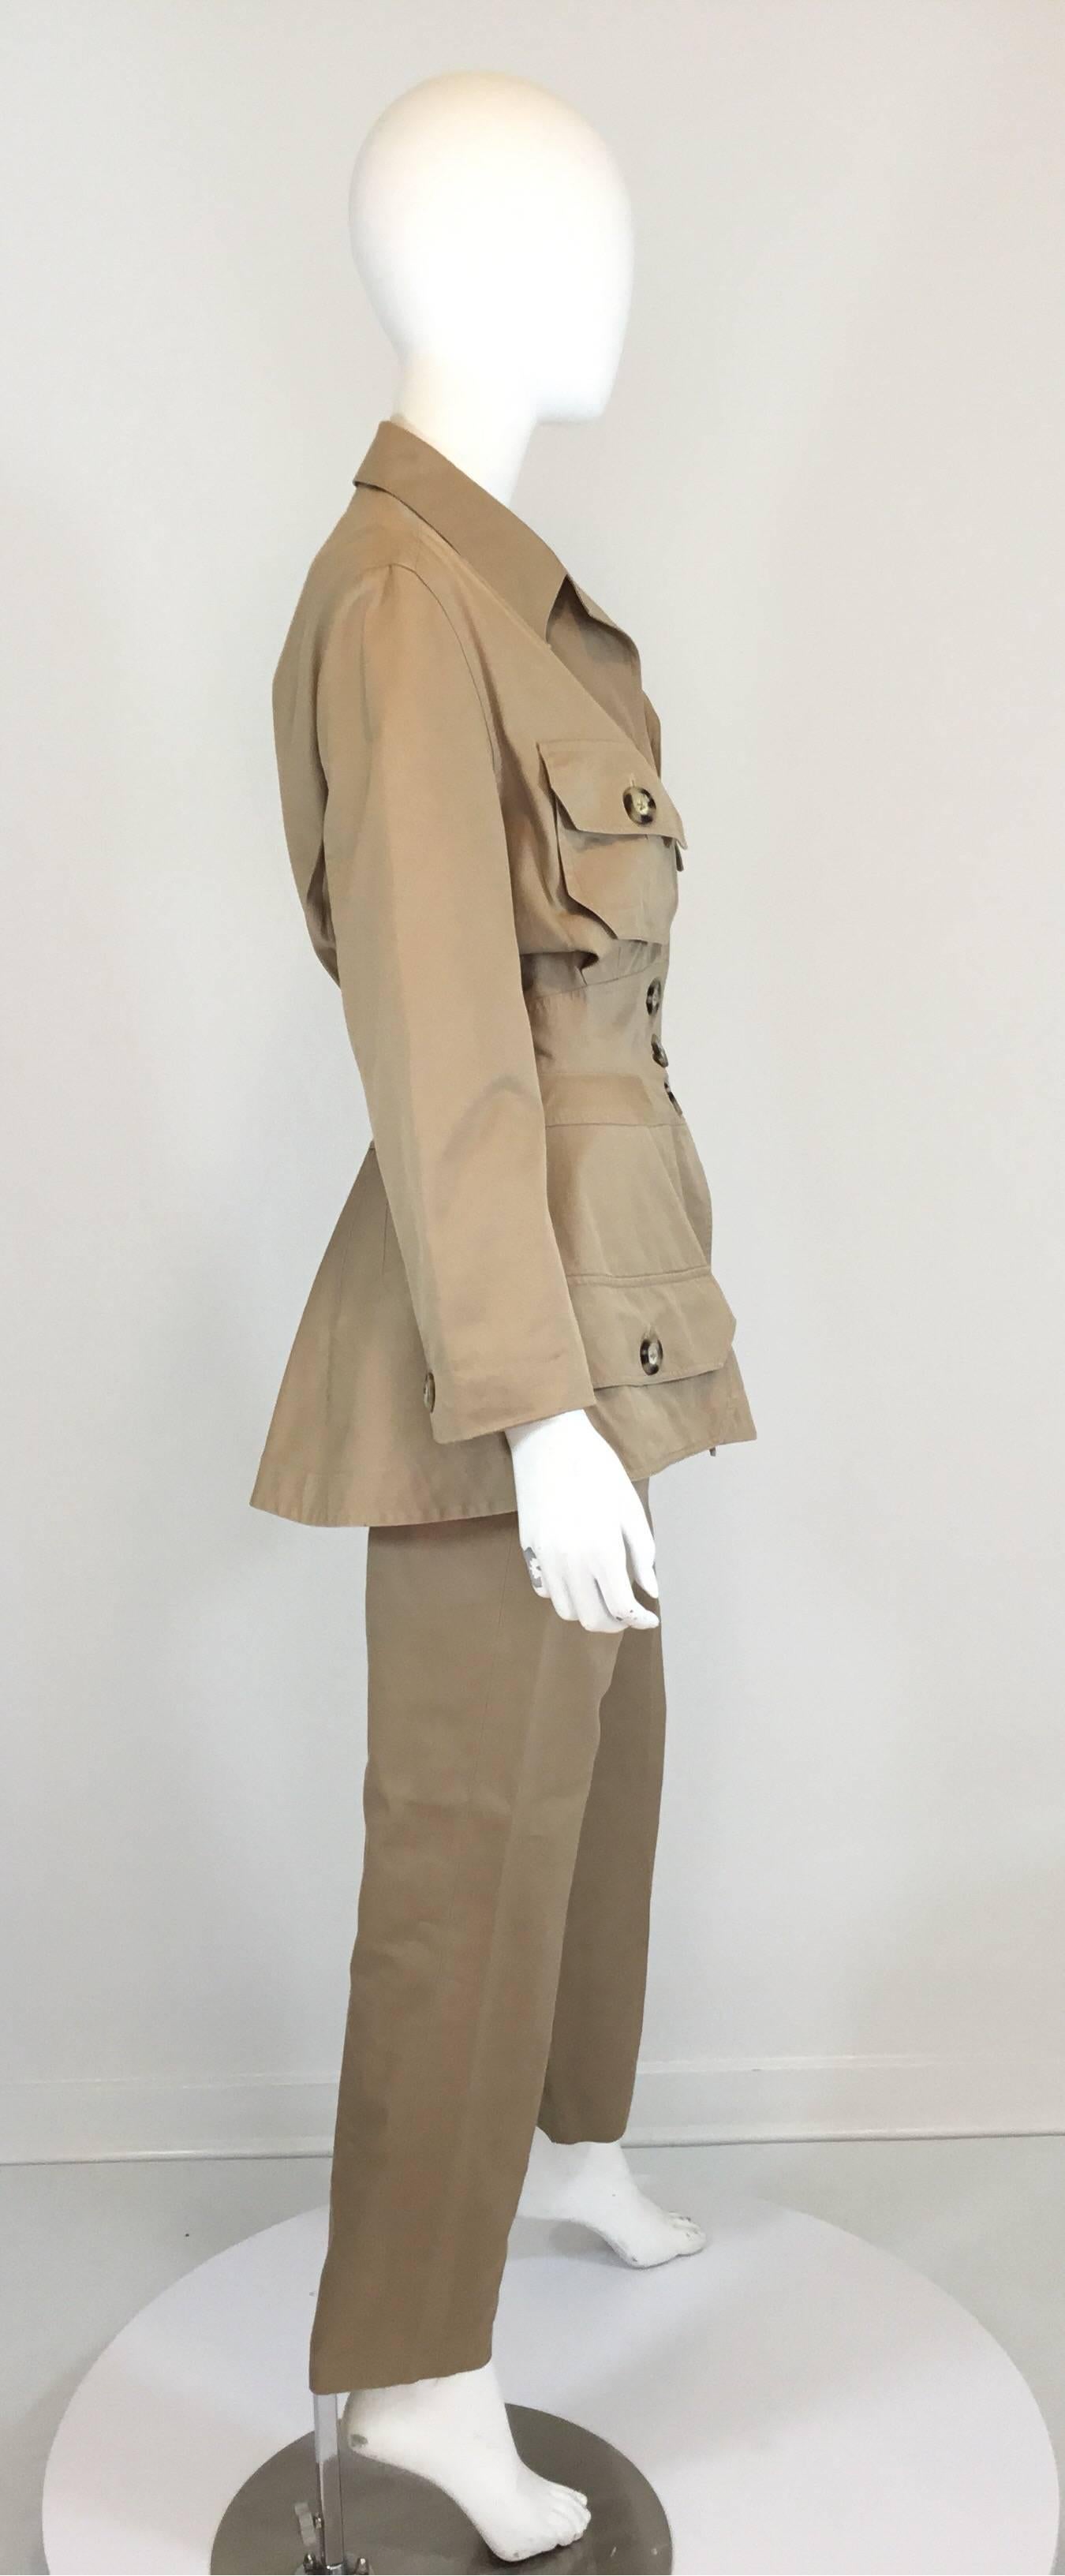 Das Byron Lars Hosen- und Jackenset hat Knopfverschlüsse an der Vorderseite der Jacke mit schildkrötenähnlichen Knopfverschlüssen und 4 aufgesetzte Taschen. Übertriebenes Design mit Taillennaht und großen Knöpfen.  Die Hose hat einen Reißverschluss